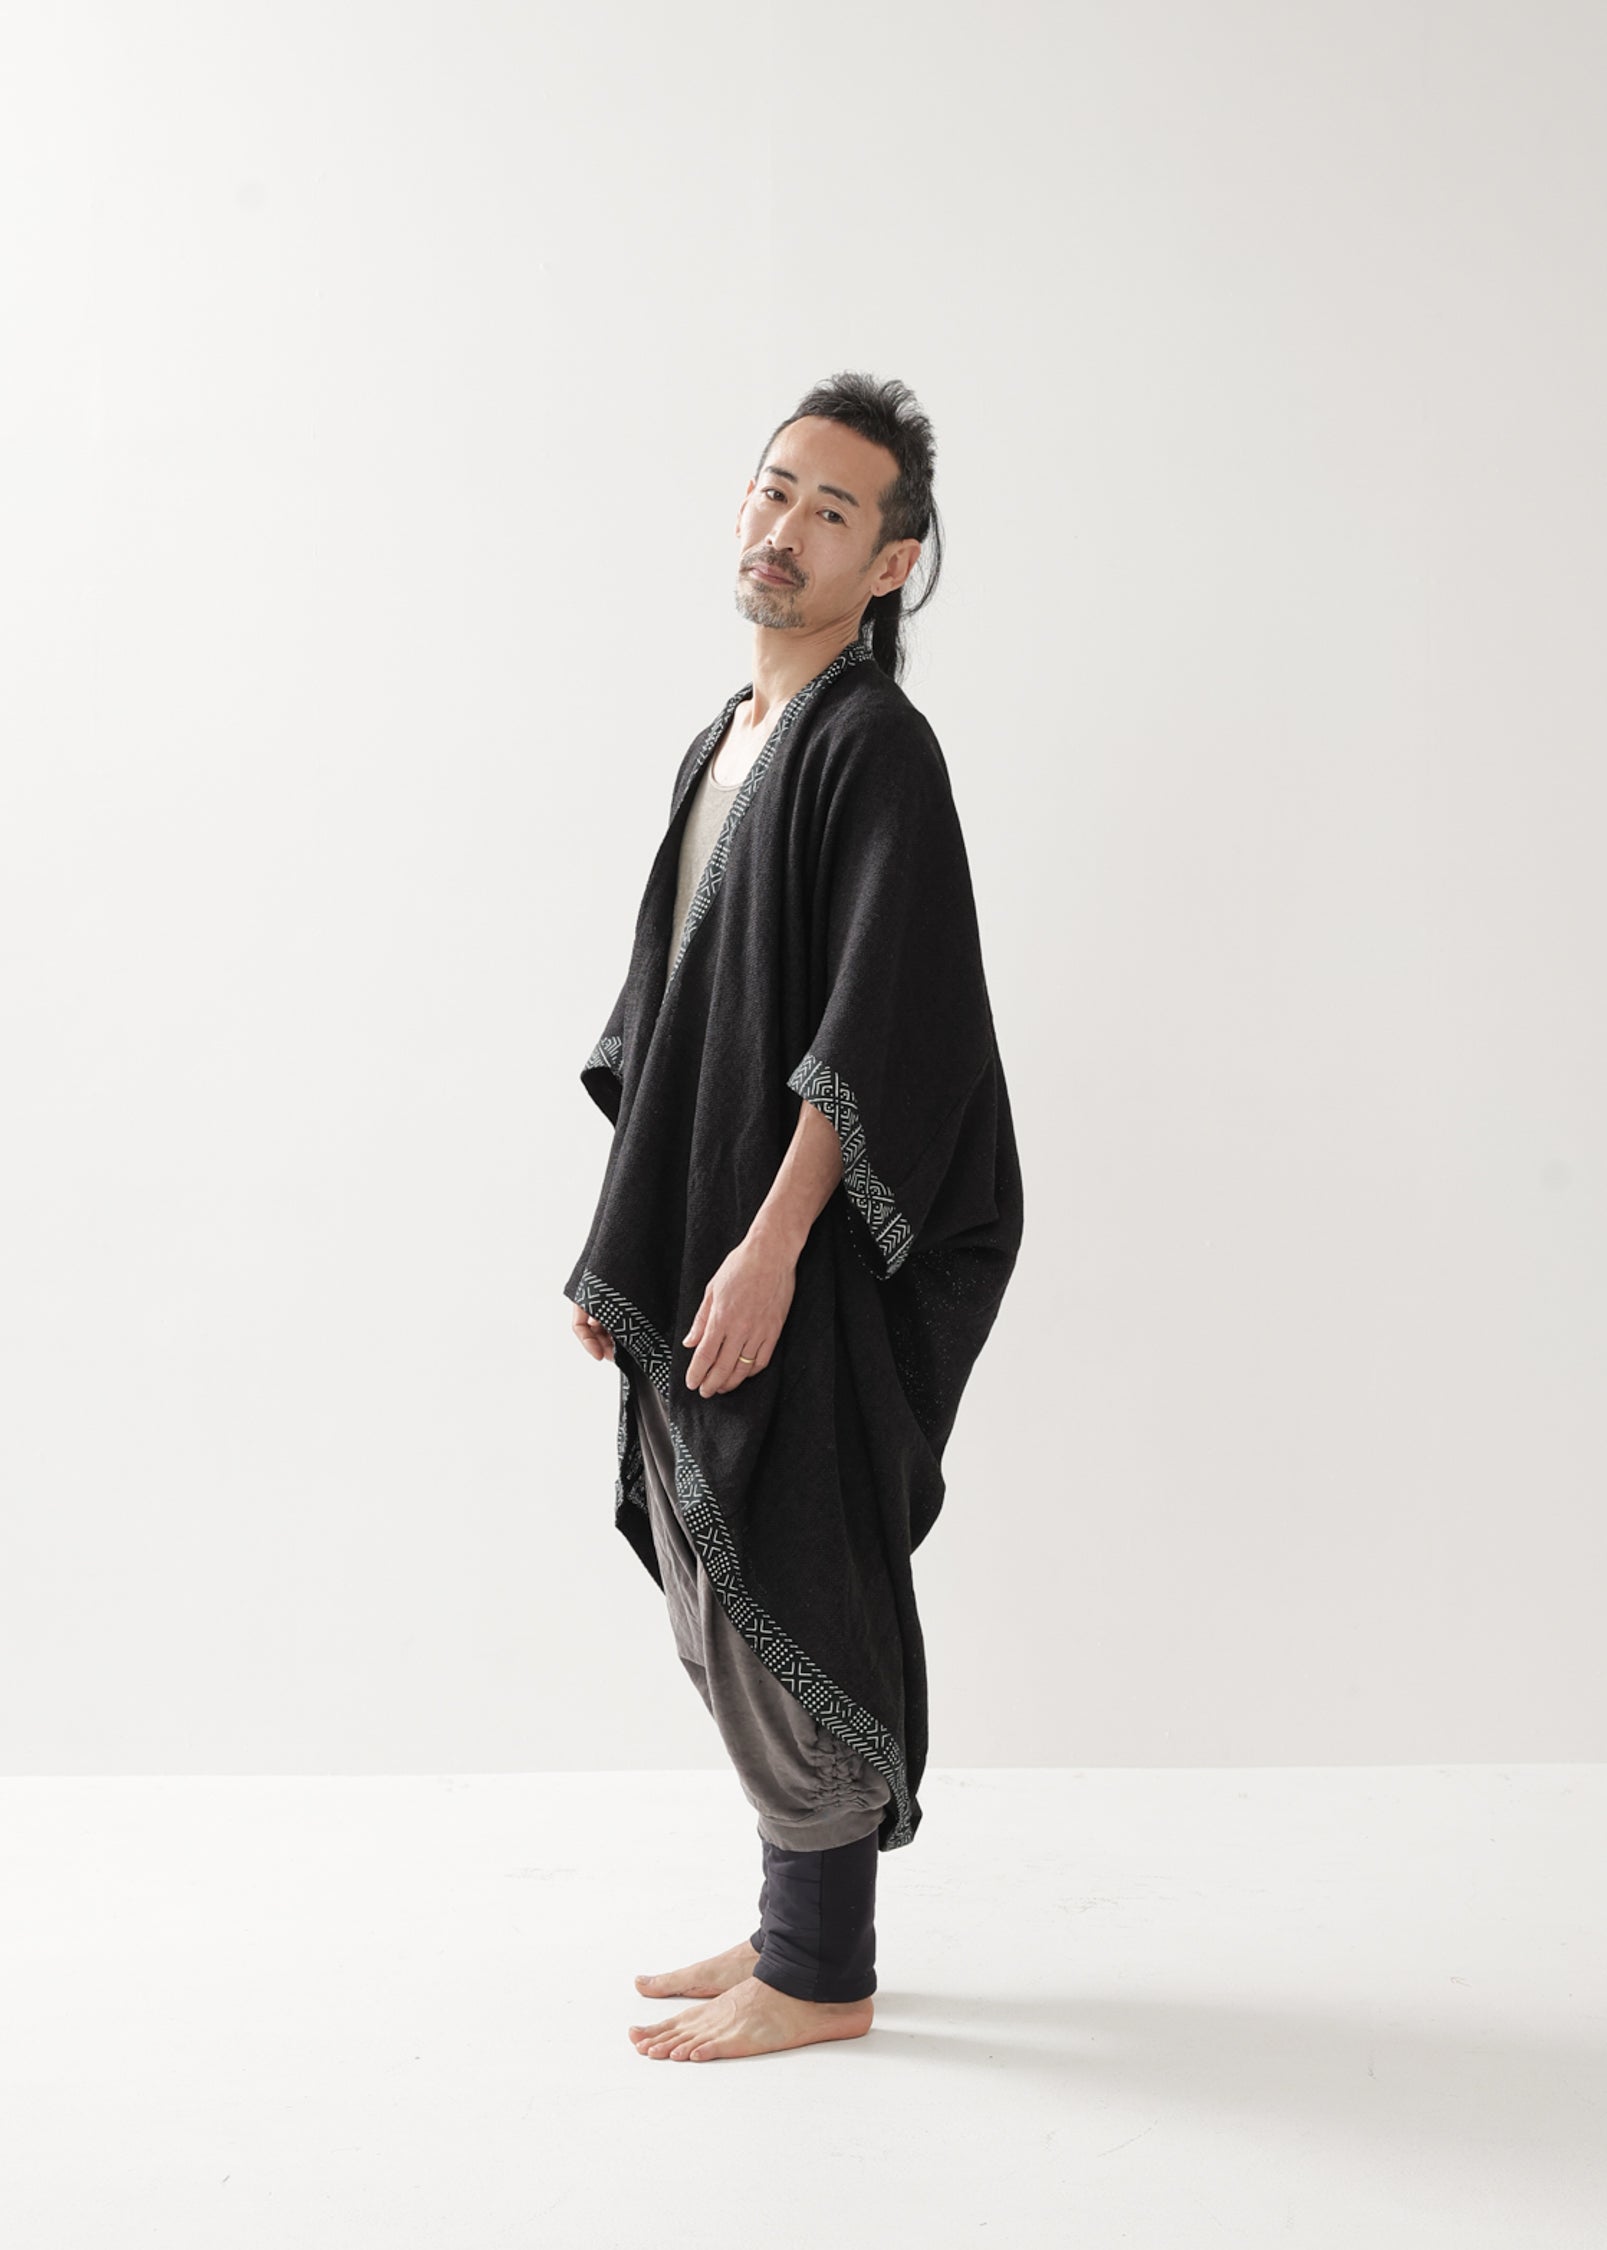 [Doragon Tail / ユニセックス] HINO kimono フィッシュテール コットン羽織